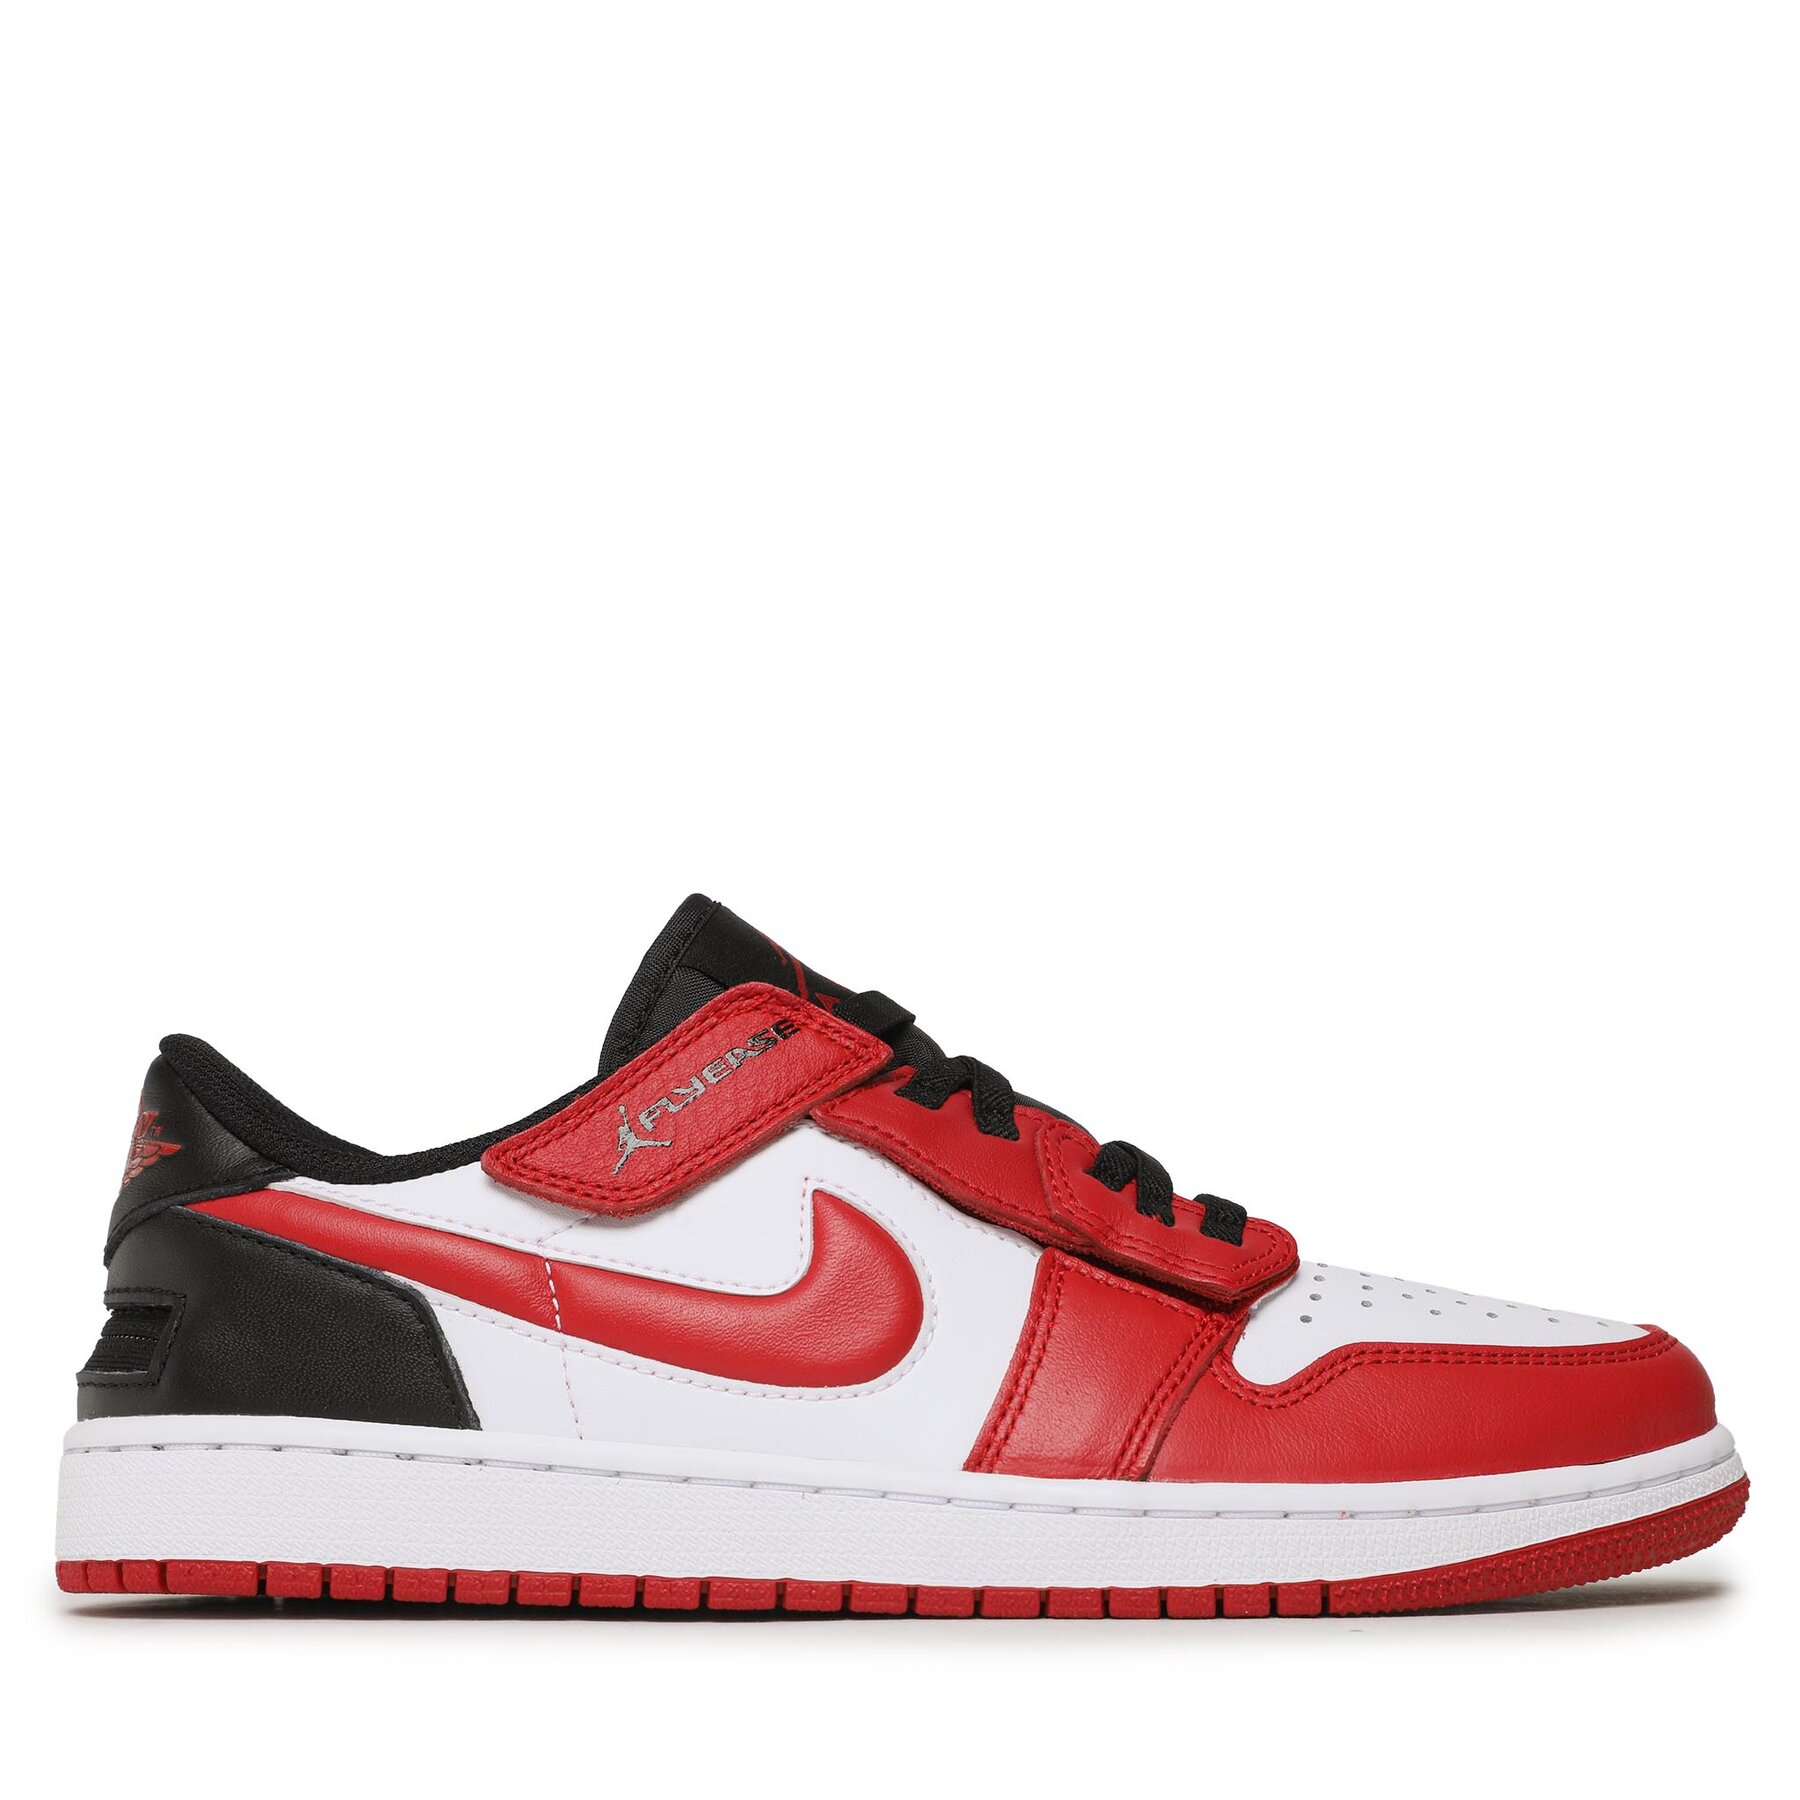 Nike Air Jordan 1 Low FlyEase white/black/red